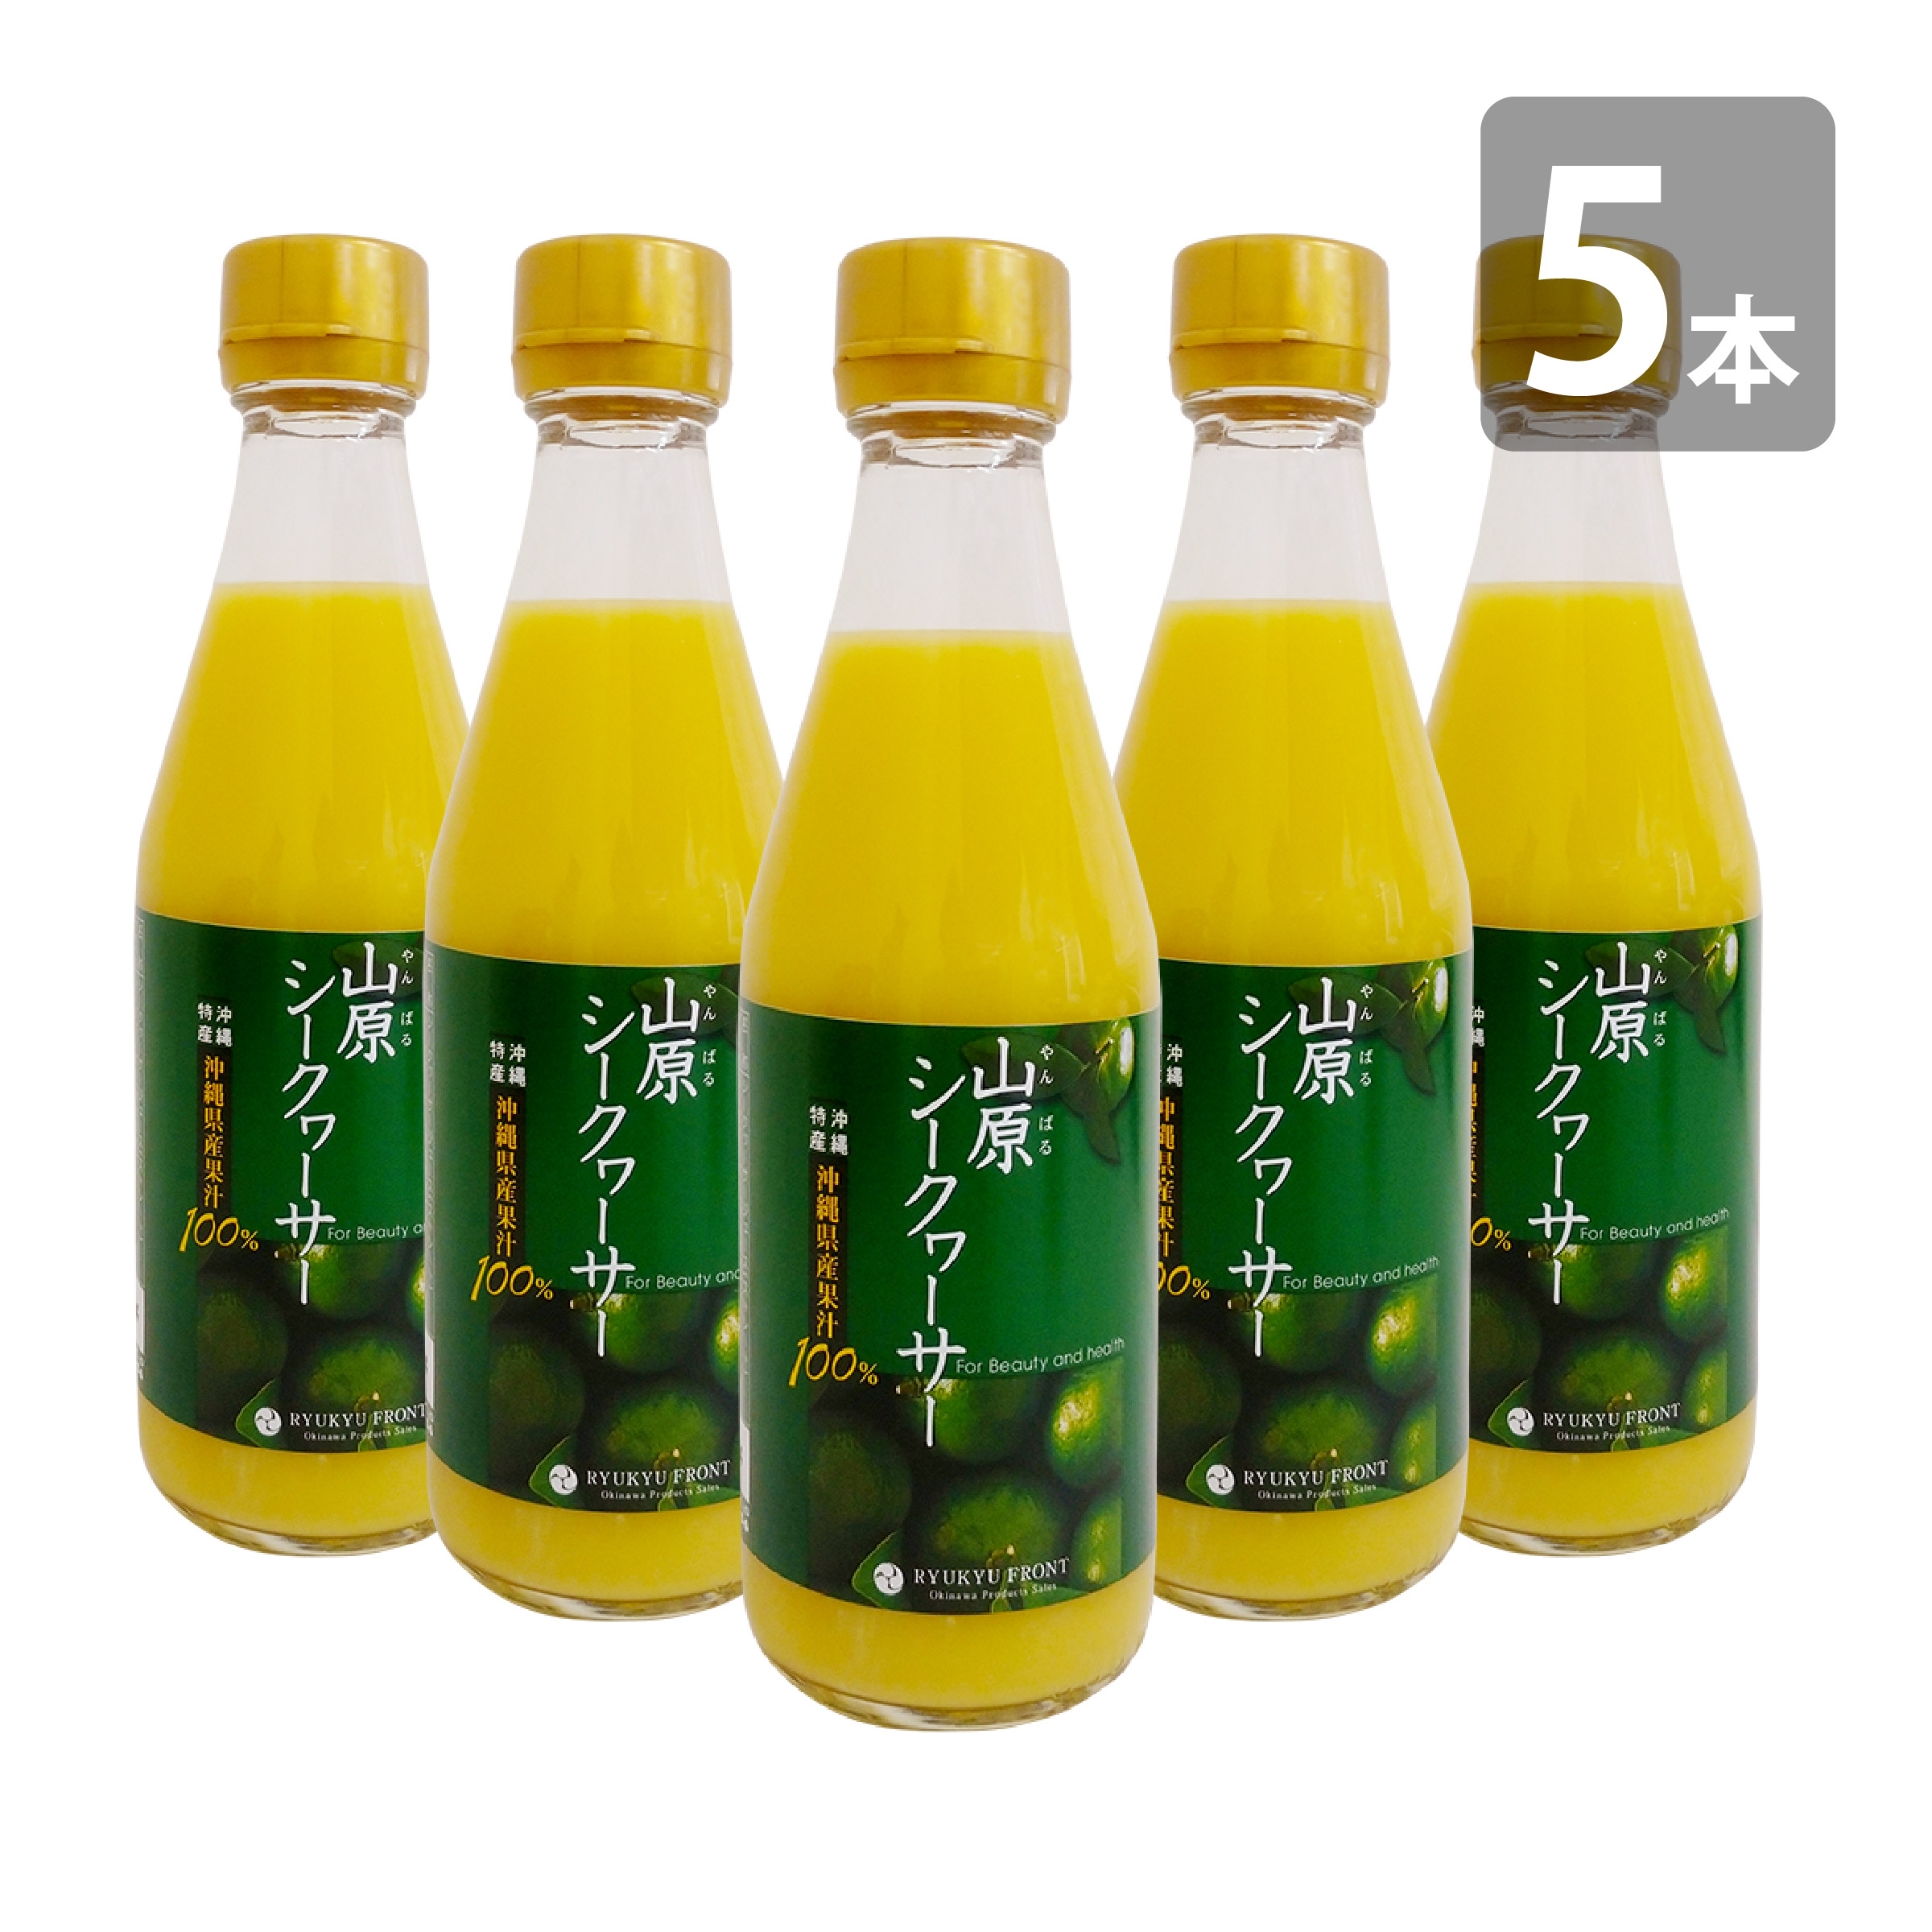 琉球フロント 山原シークヮーサー 瓶 300ml×5 フルーツジュースの商品画像